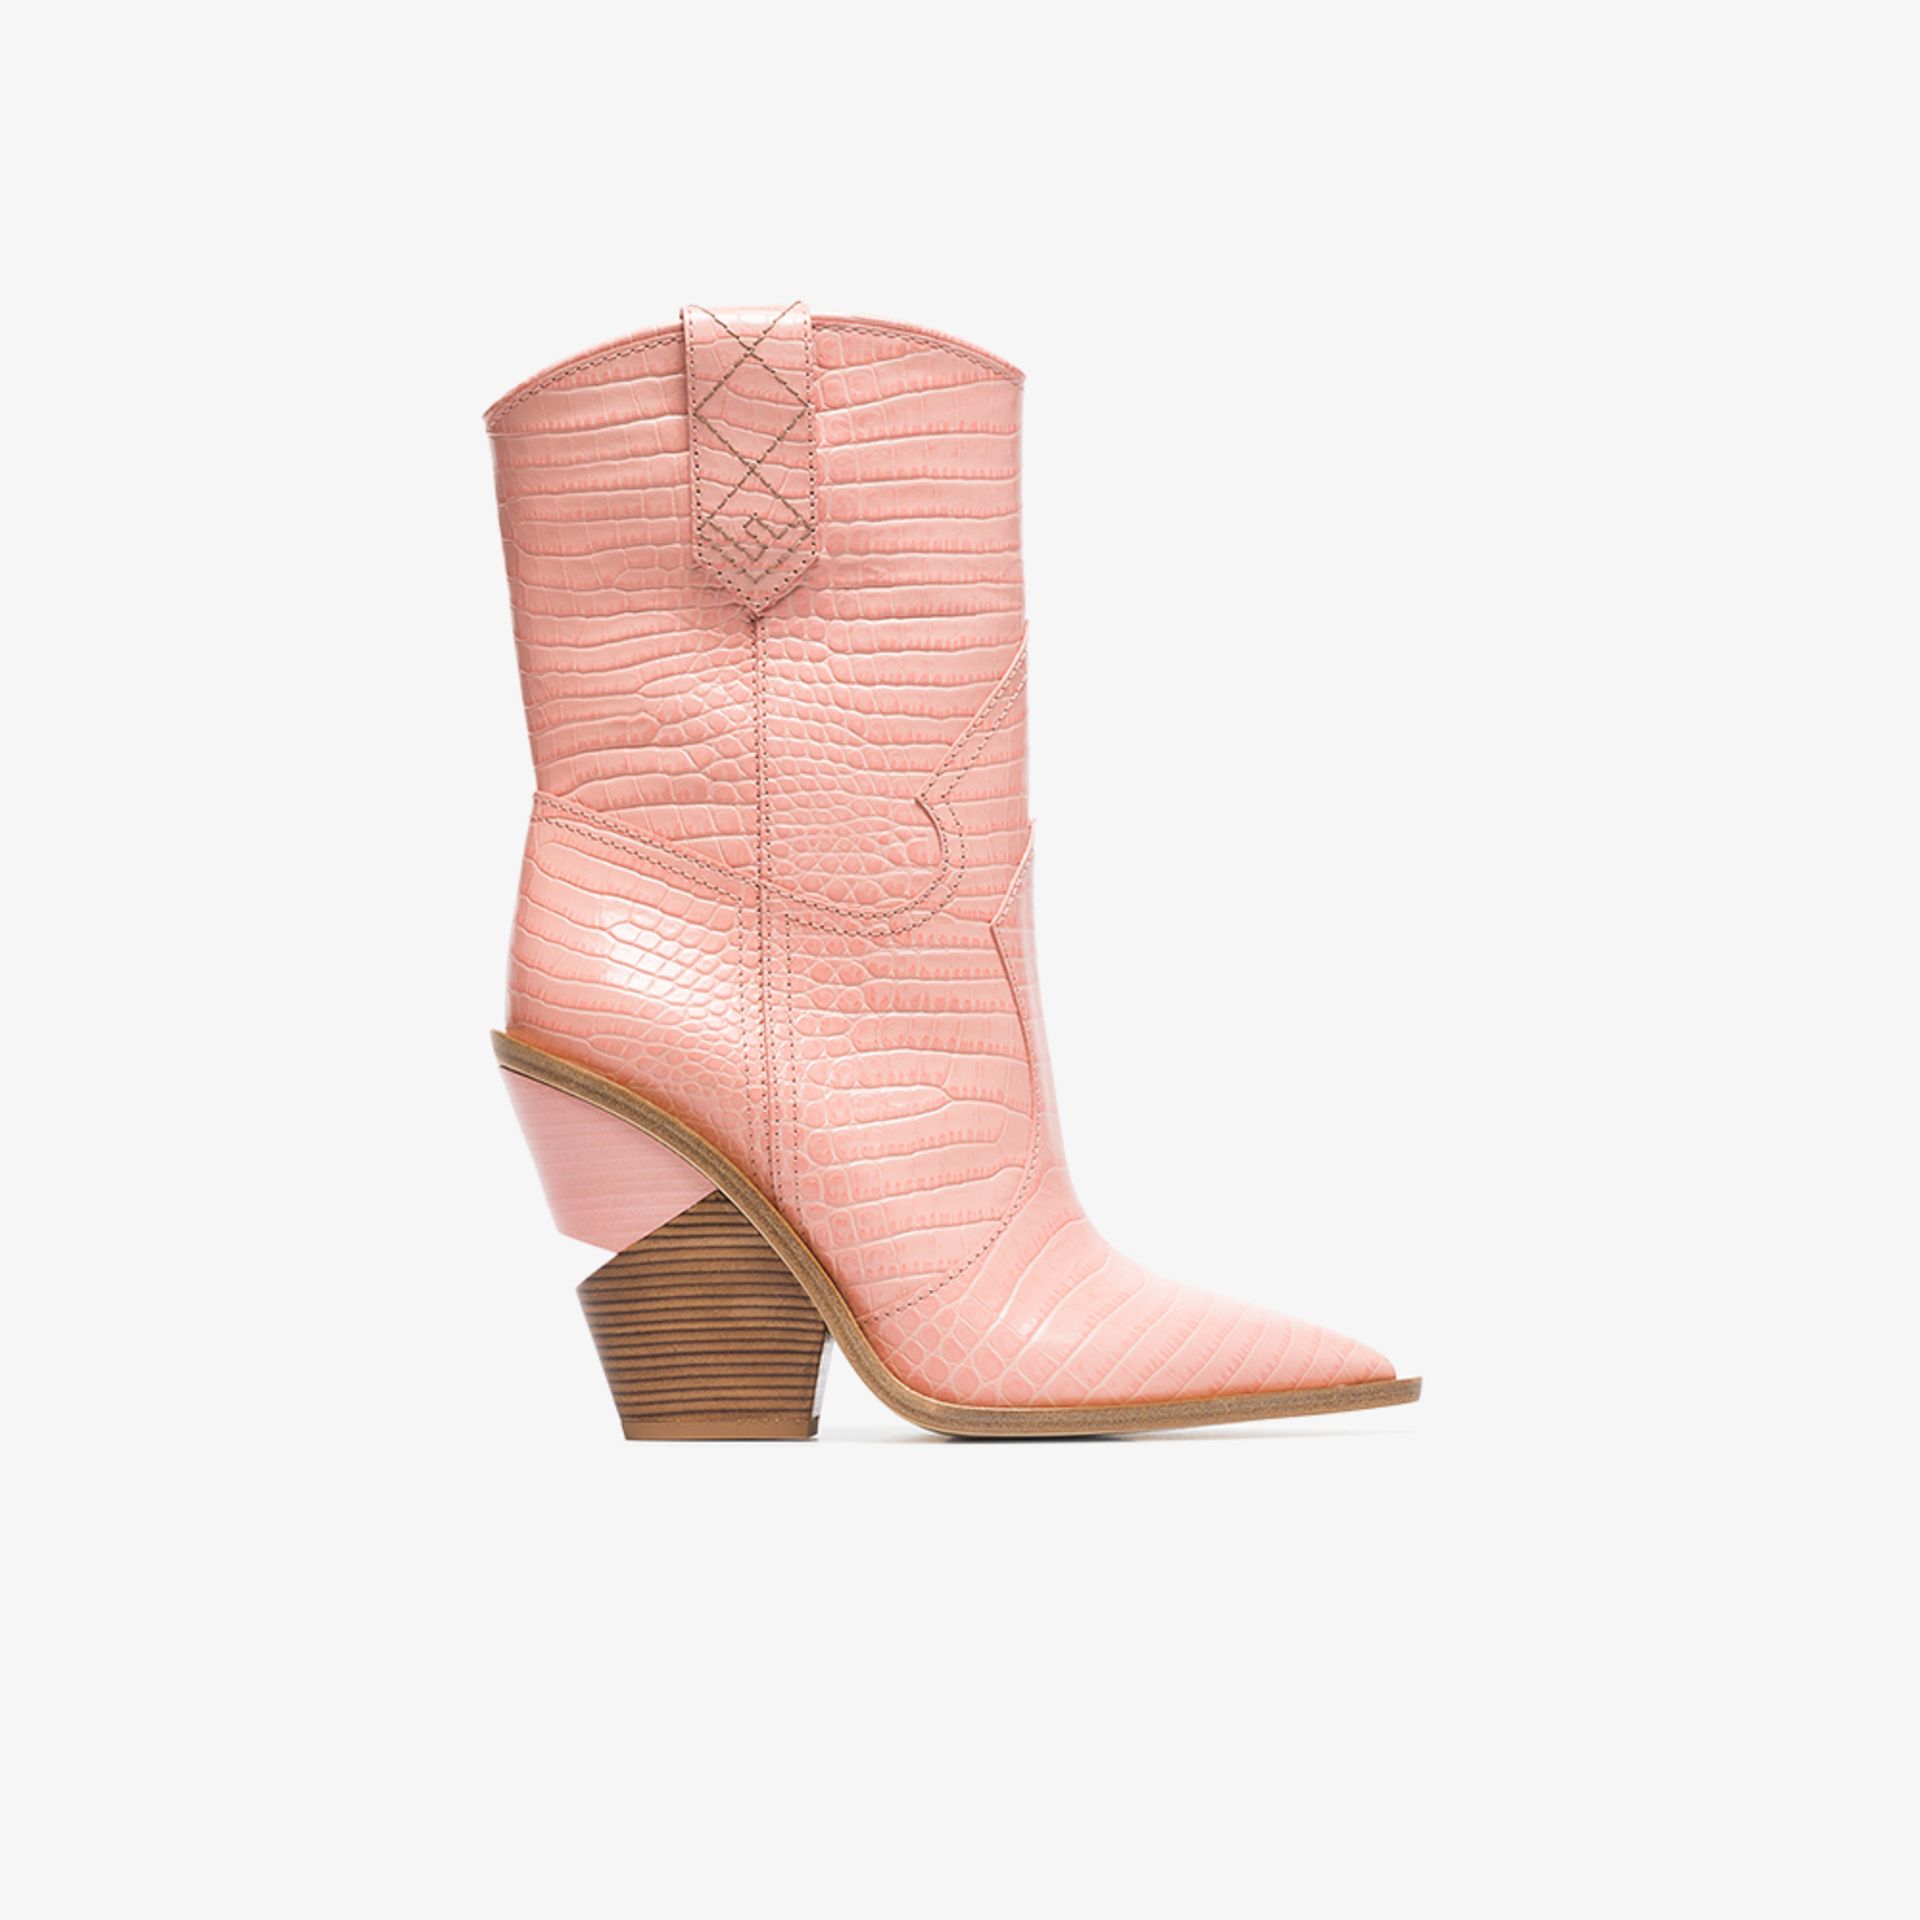 pink fendi boots